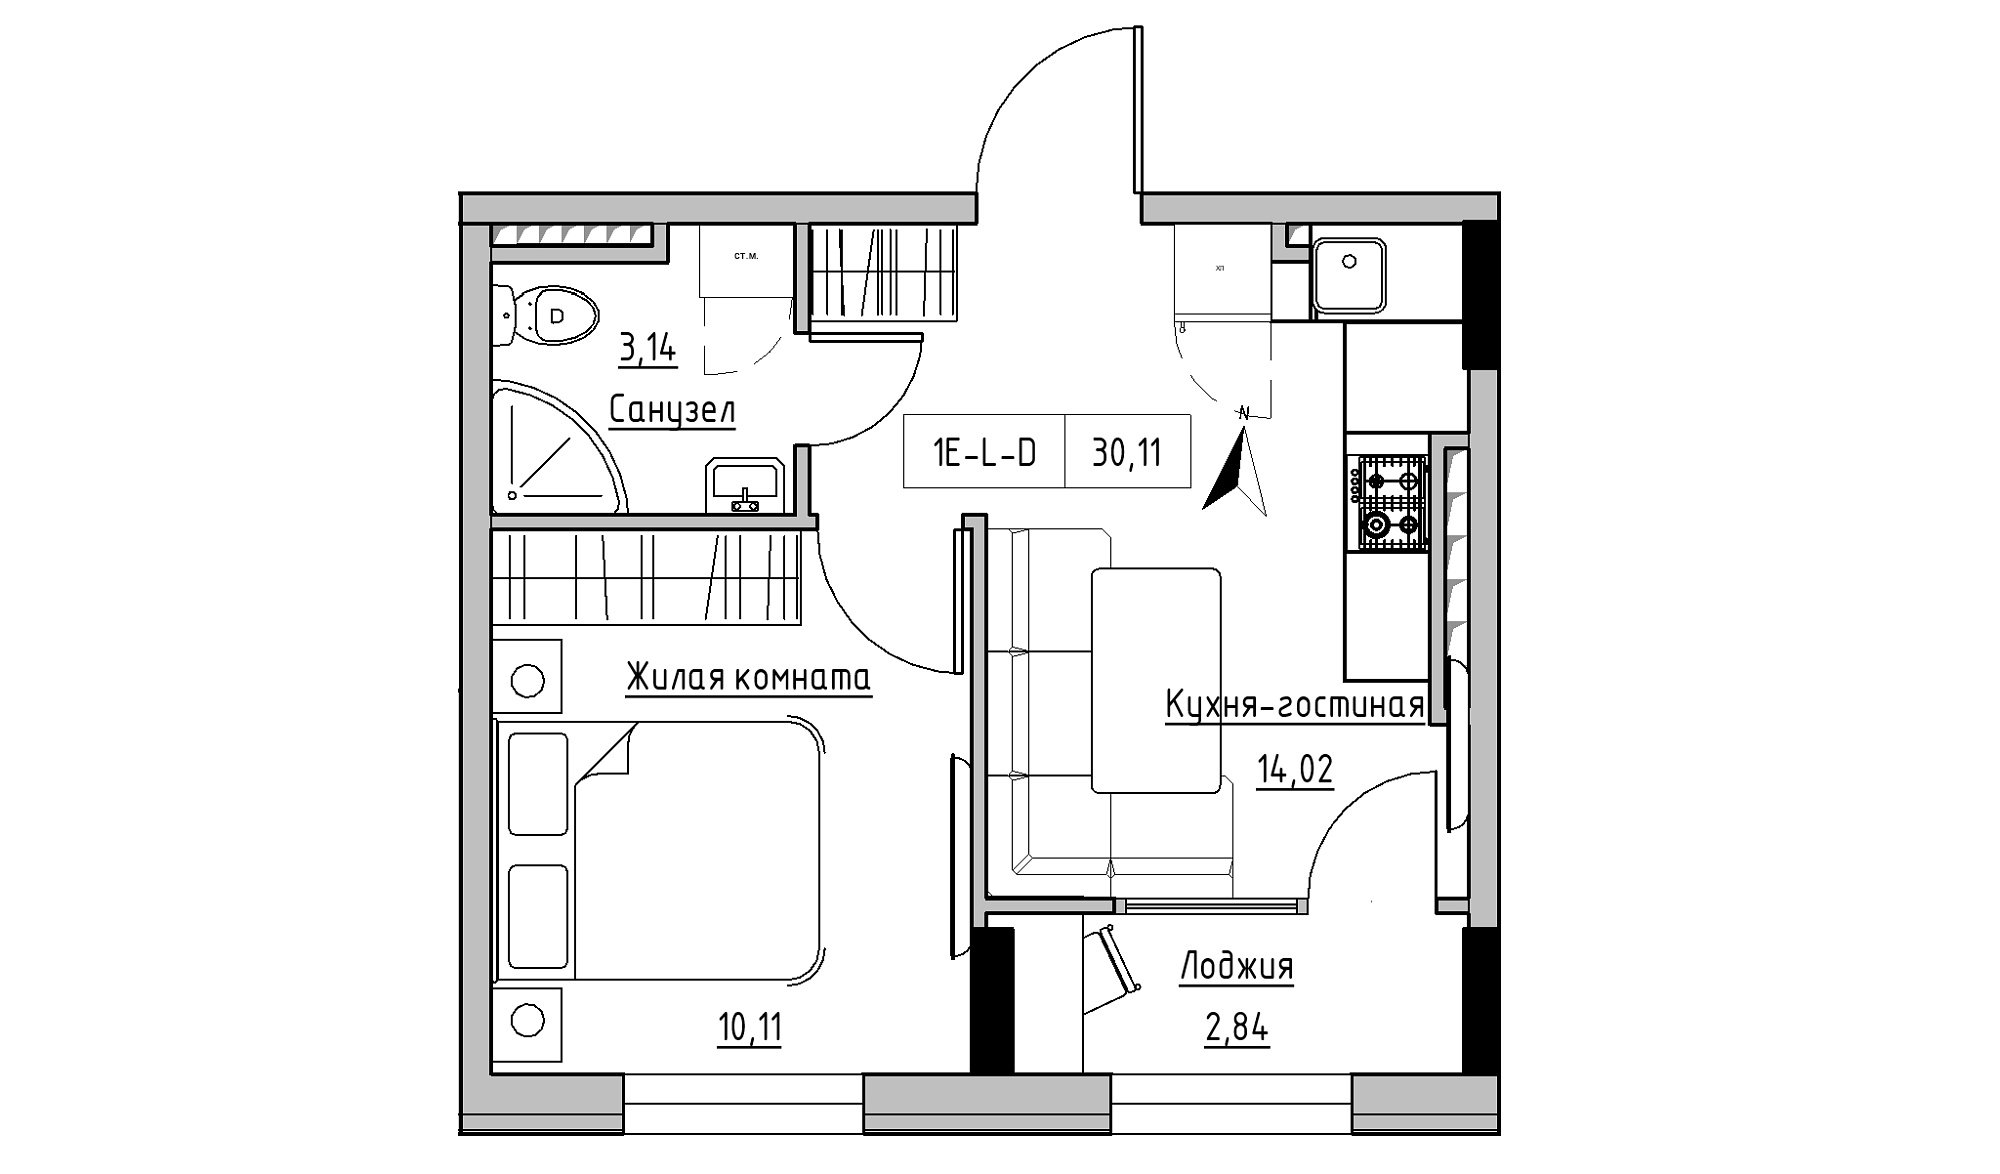 Планировка 1-к квартира площей 30.11м2, KS-025-05/0014.